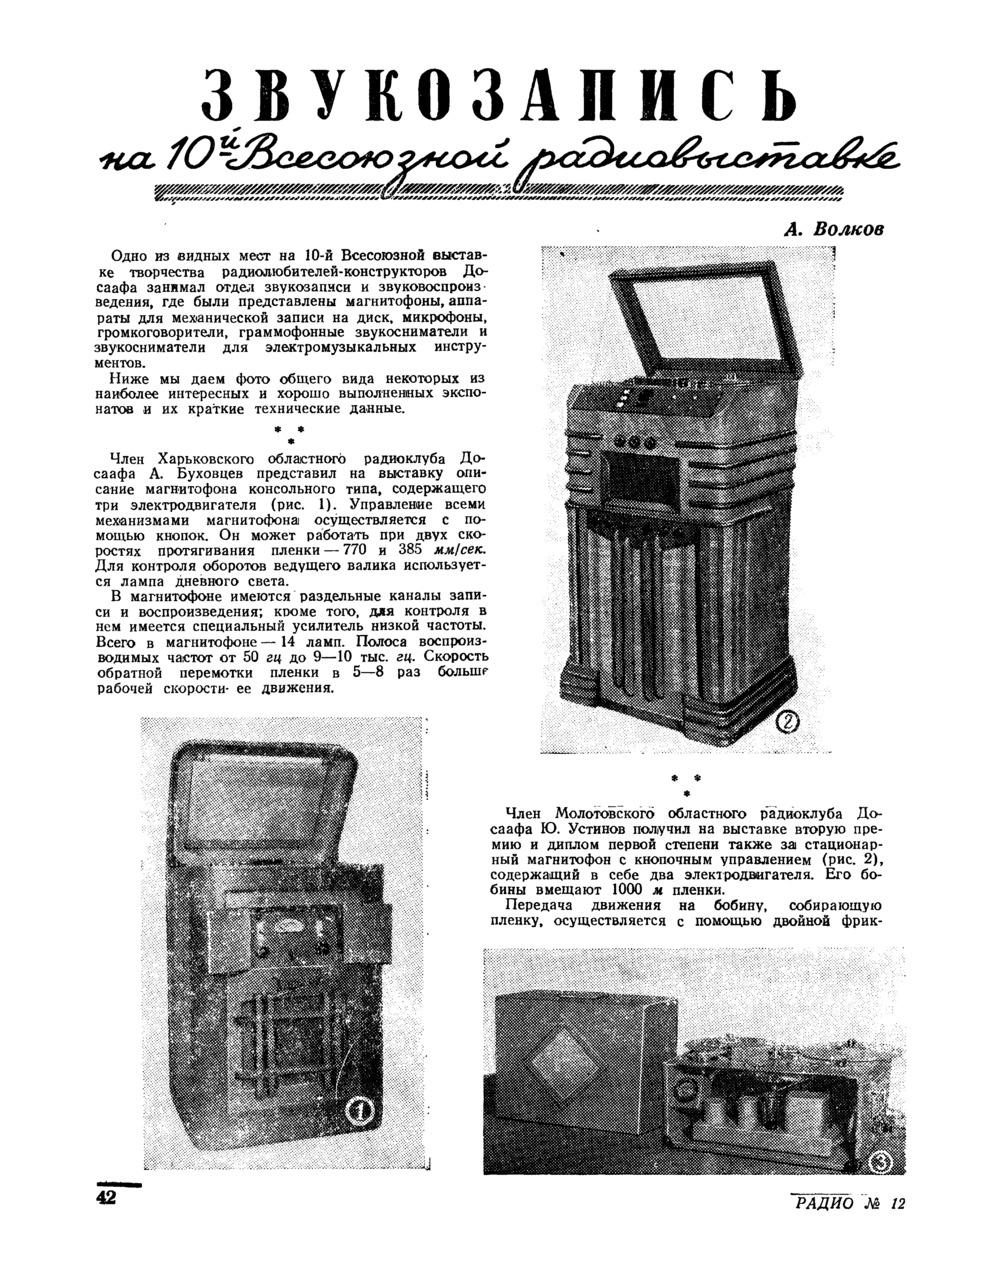 Стр. 42 журнала «Радио» № 12 за 1952 год